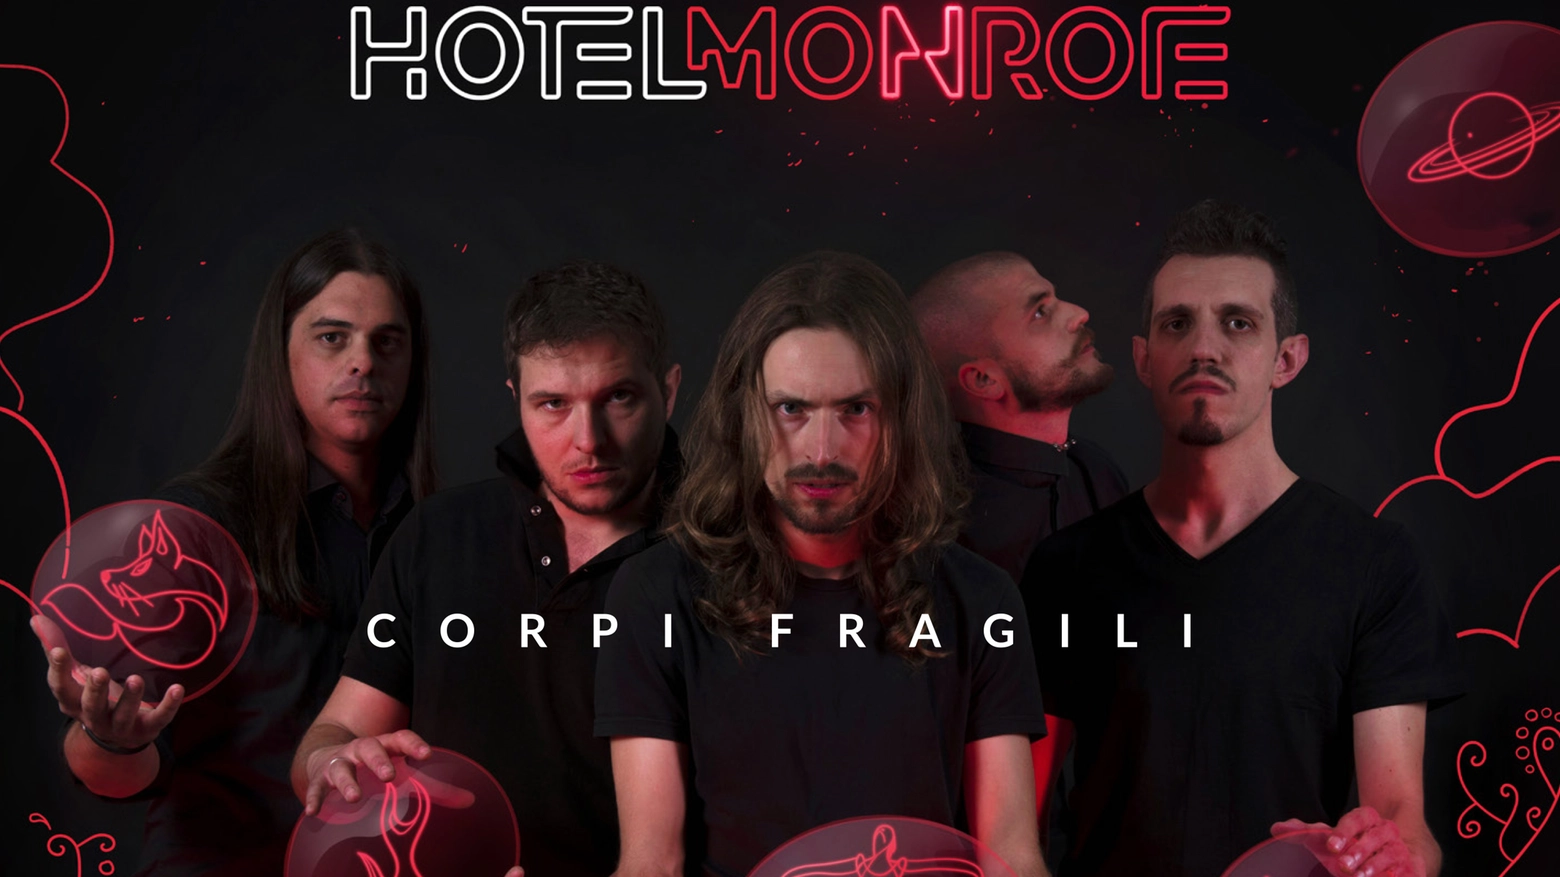 Esce venerdì 12 aprile Corpi fragili, il primo disco degli Hotel Monroe